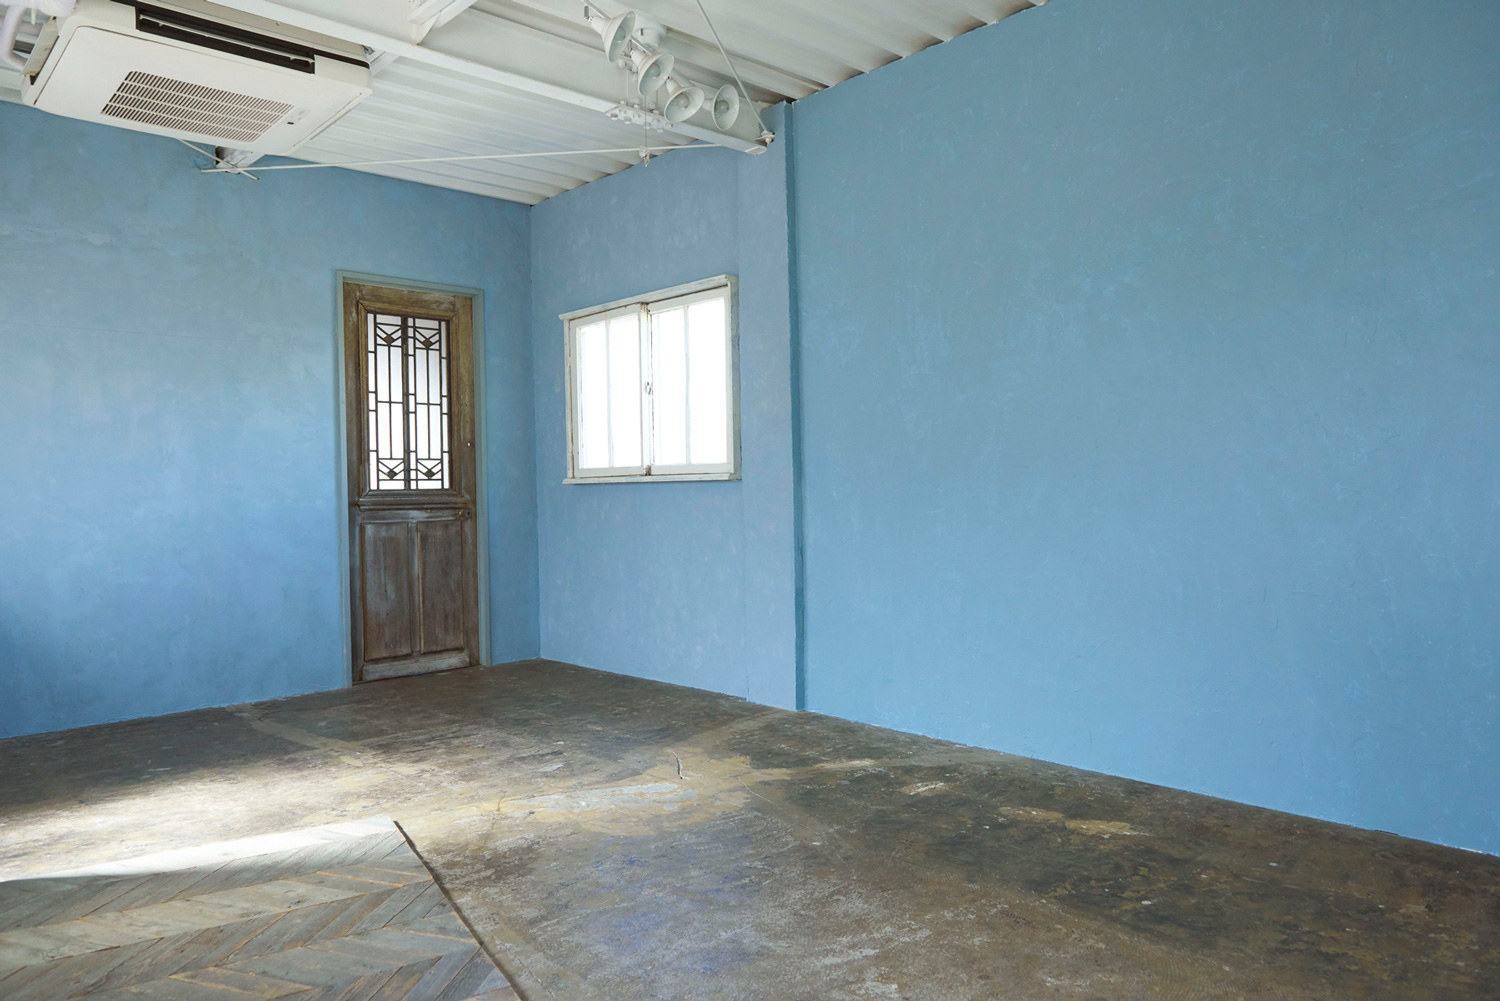 ブルーの漆喰壁スペース